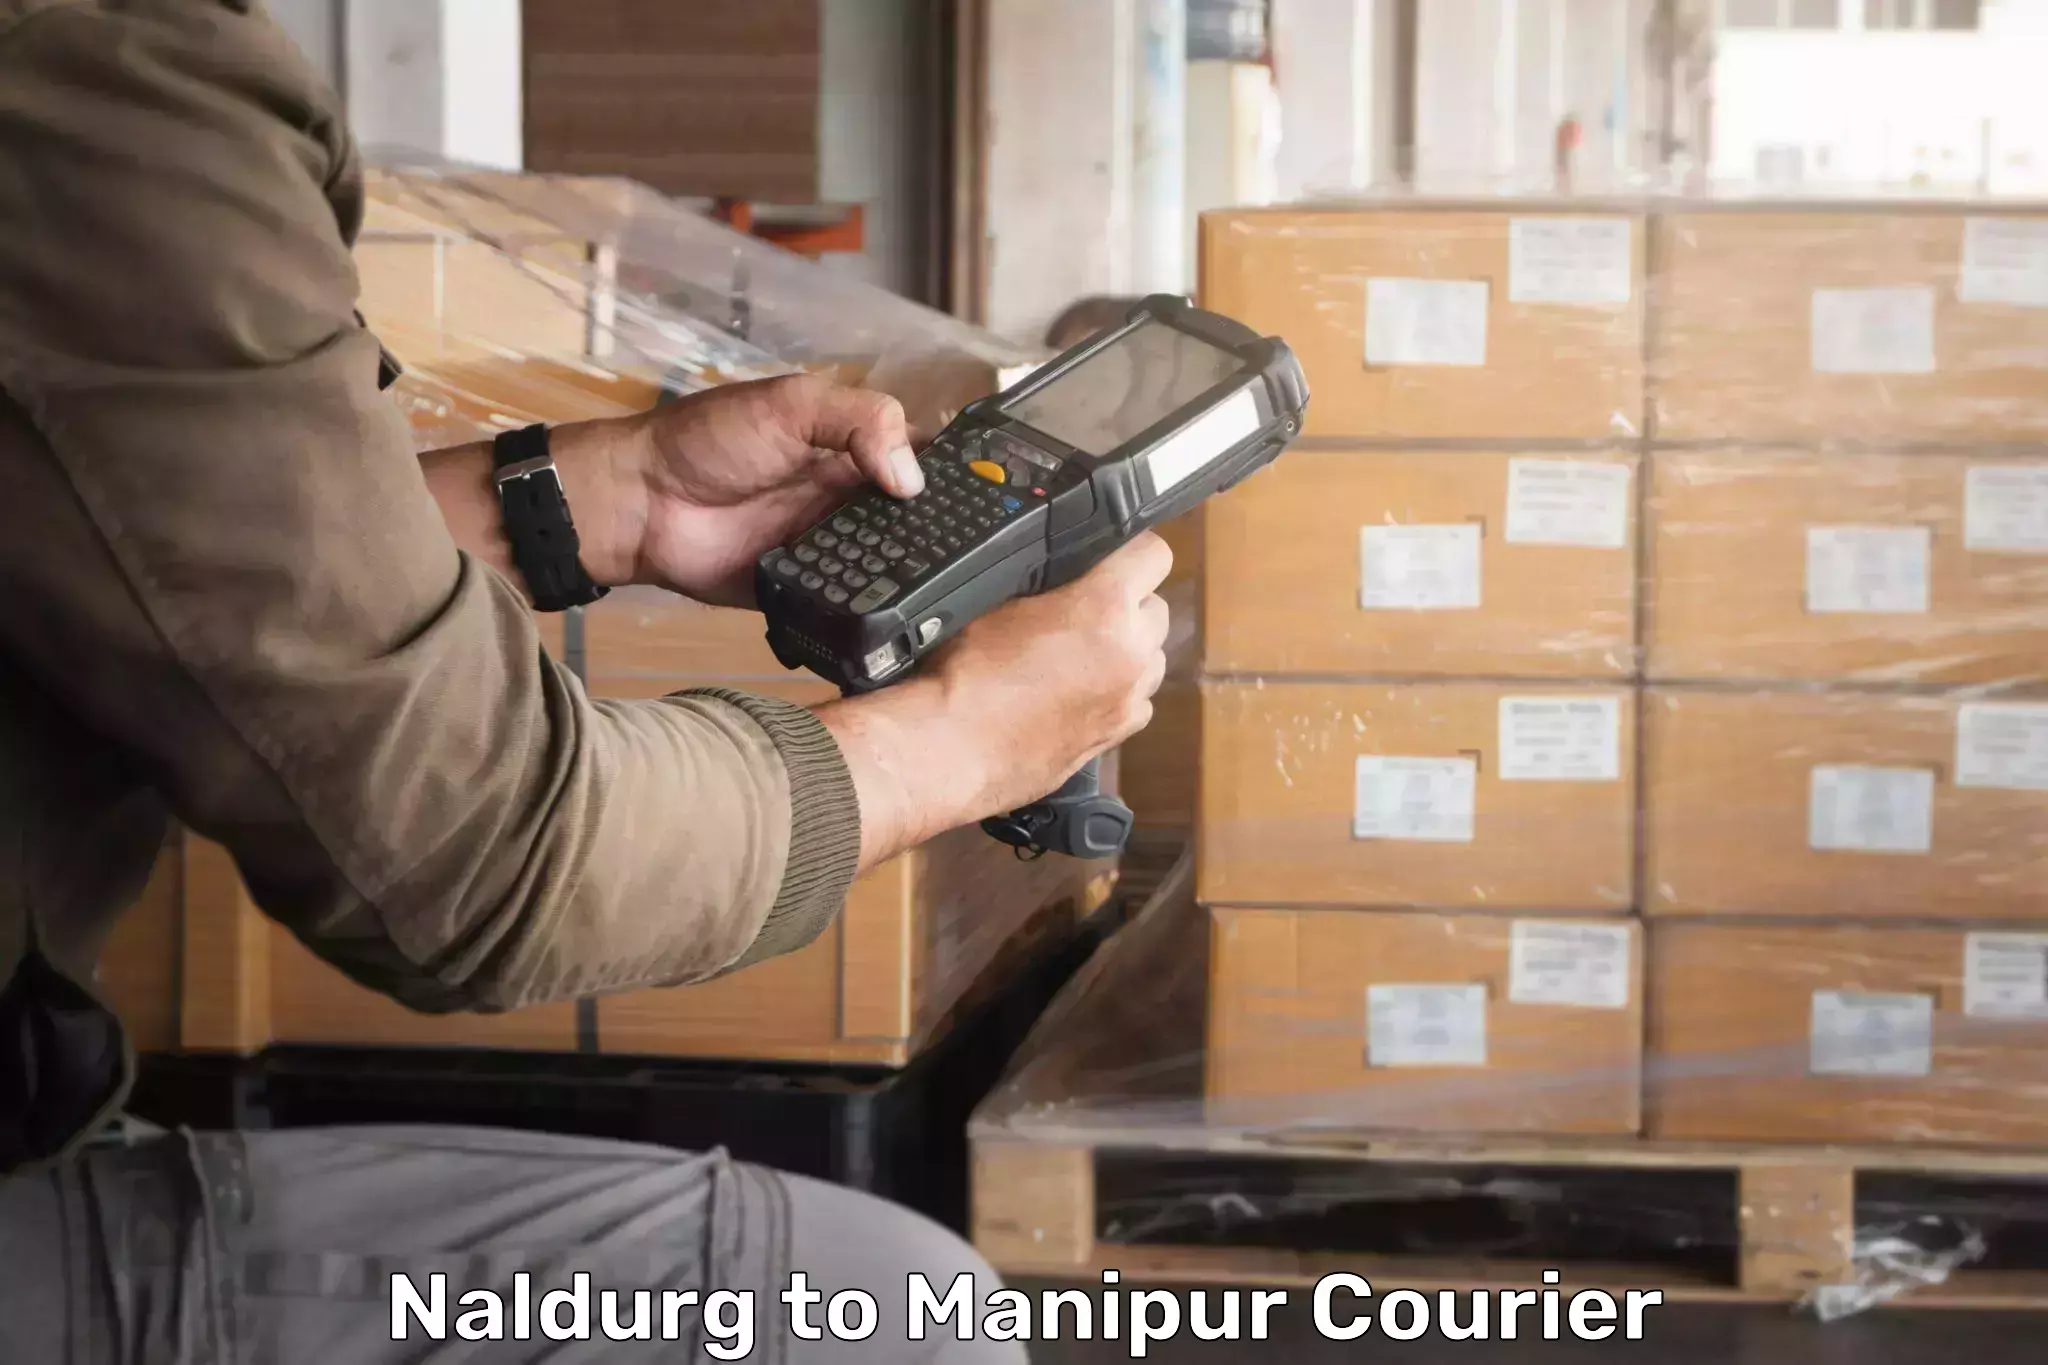 Express logistics service Naldurg to Kanti